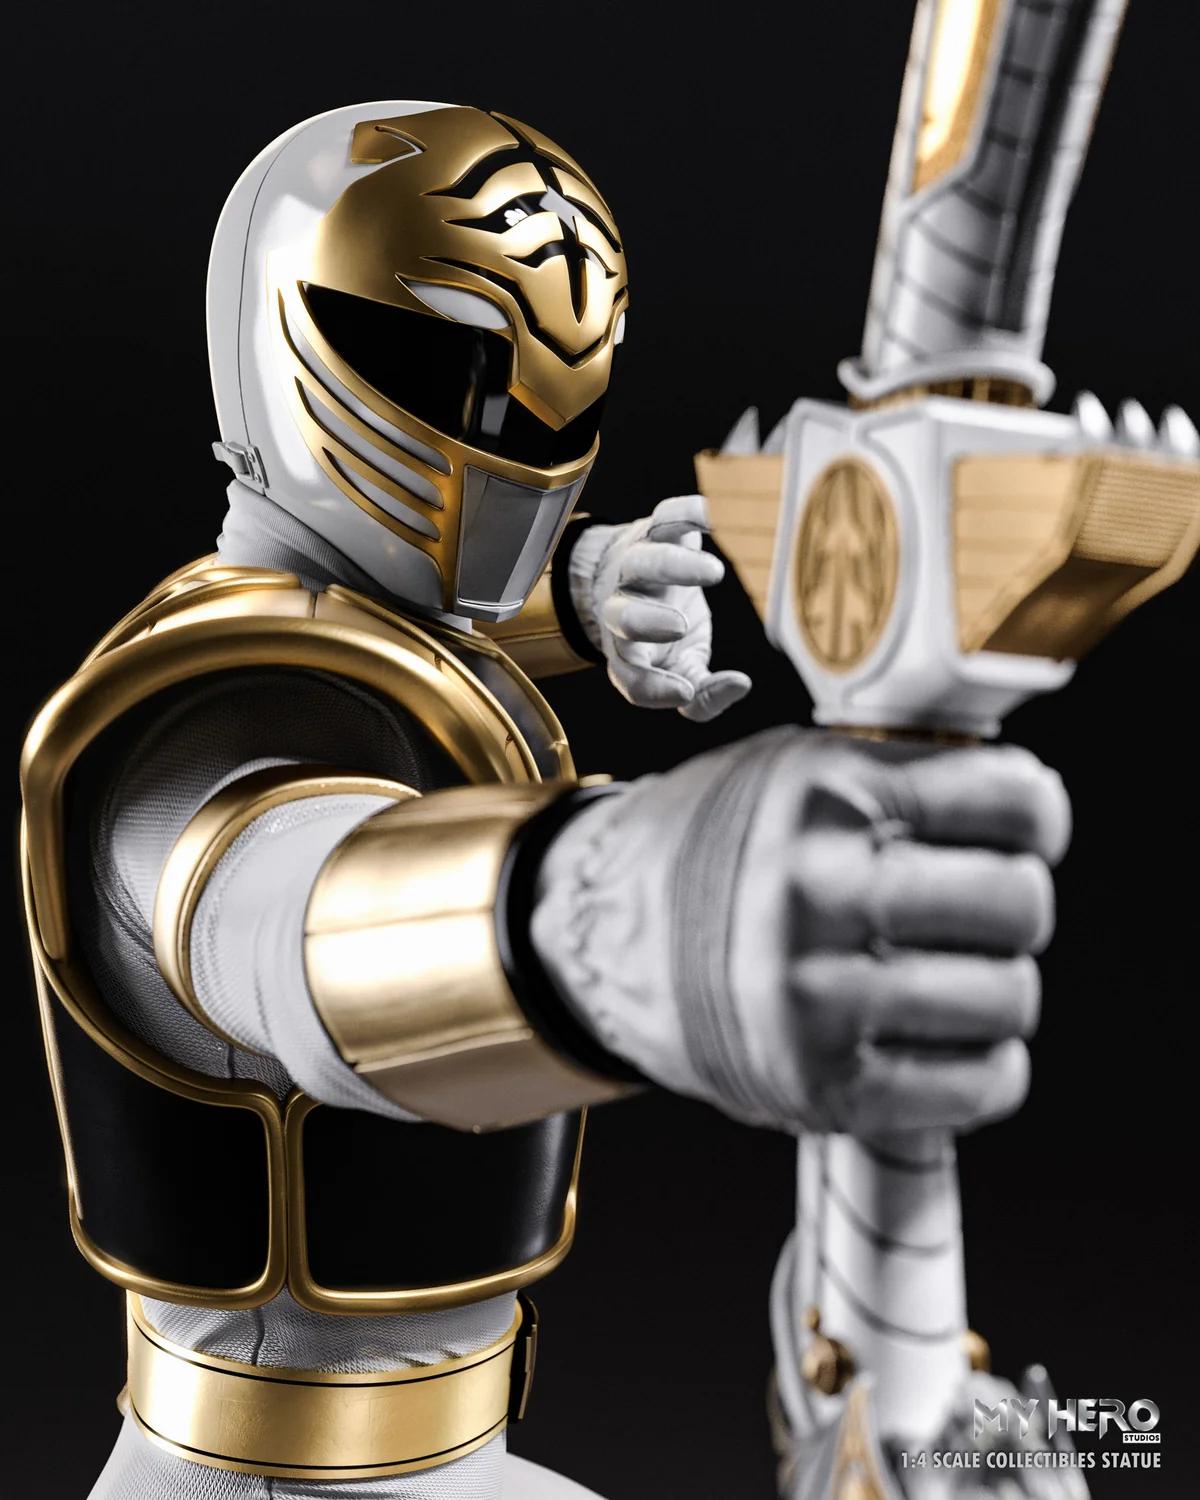 Ranger Branco ganhará nova estátua incrível pela My Hero Studios